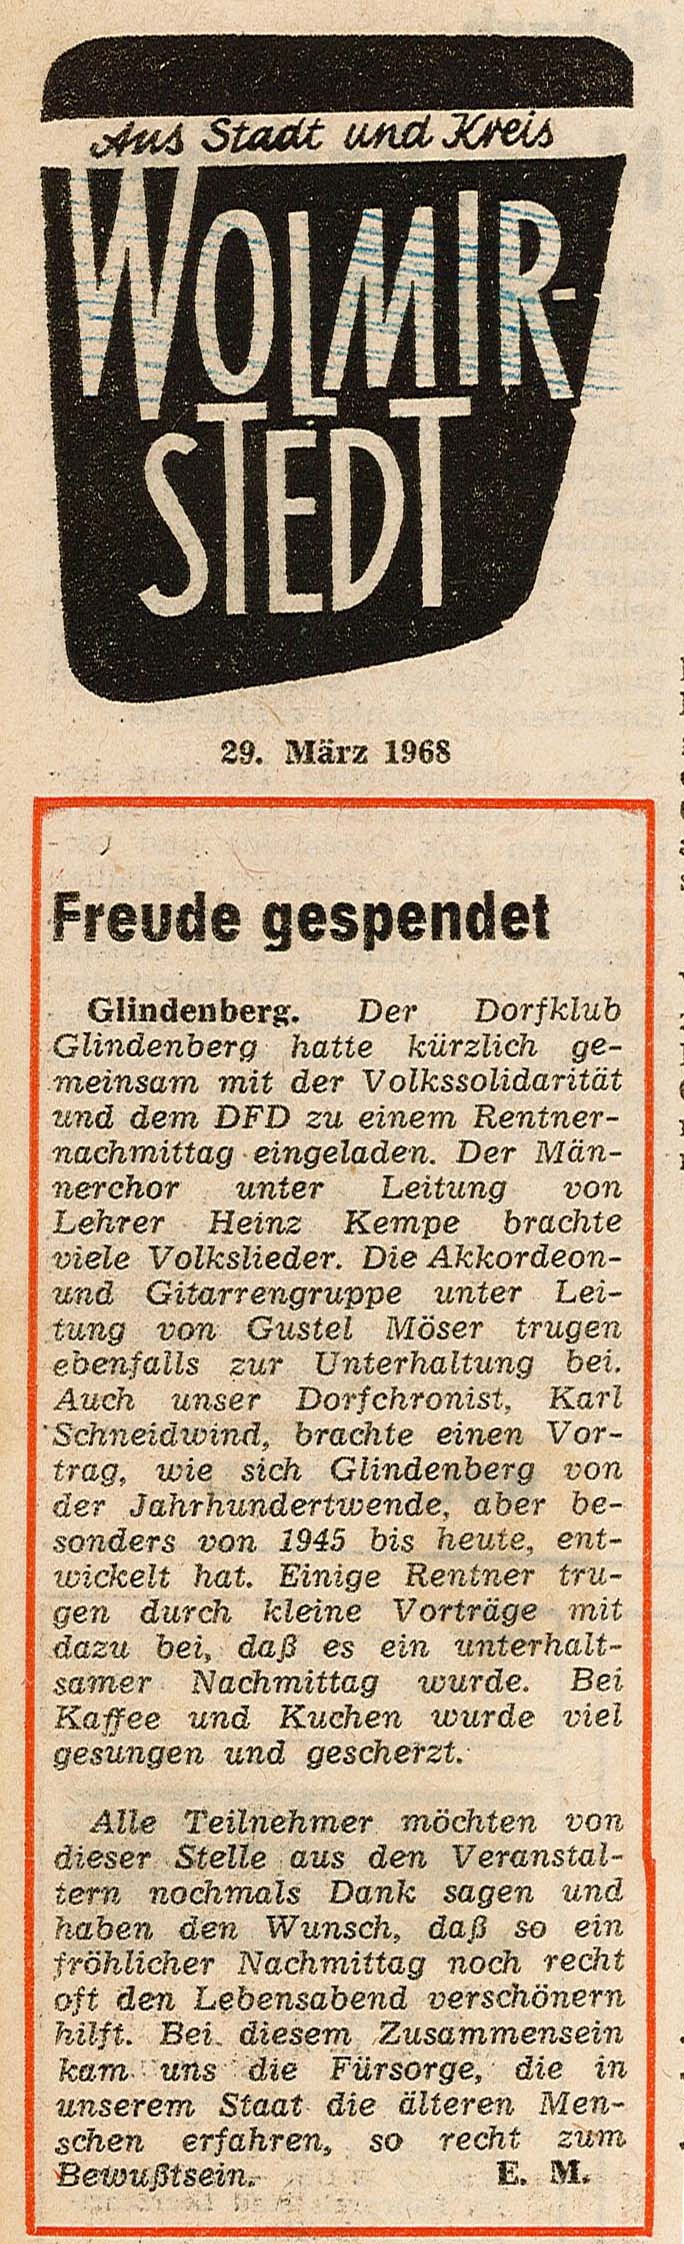 Zeitungsartikel "Freude gespendet", 29.03.1968 (Museum Wolmirstedt RR-F)